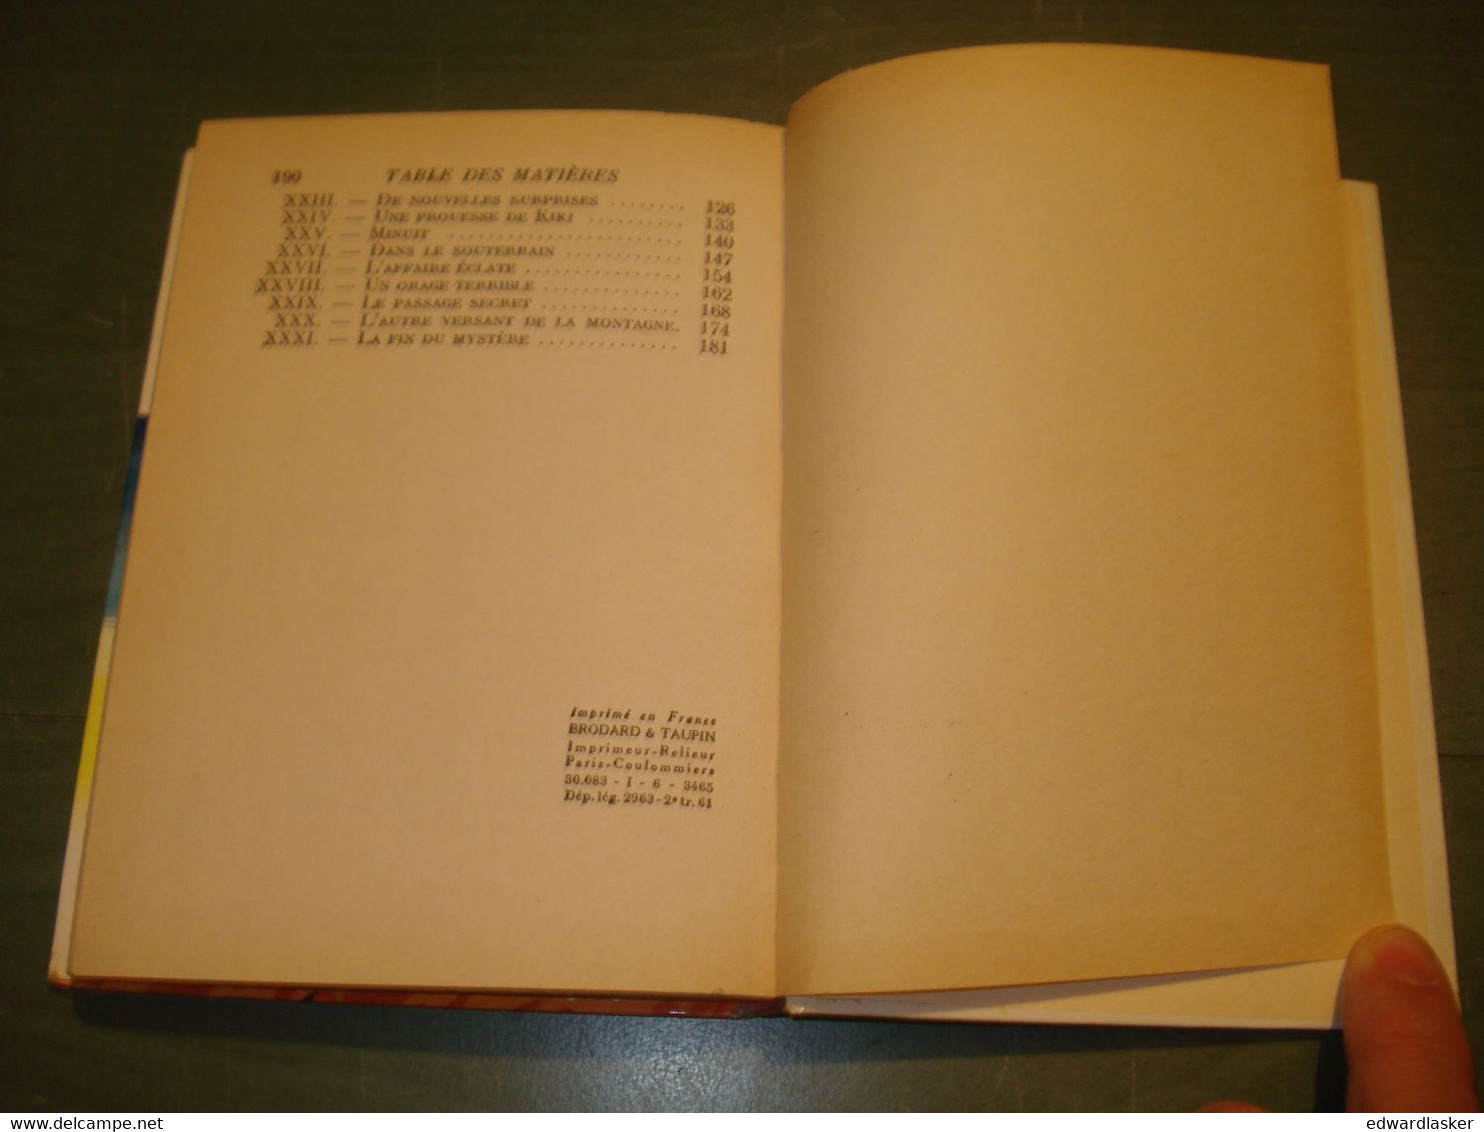 BIBLIOTHEQUE ROSE 83 : Le Mystère du Nid d'aigle /Enid Blyton - EO 1961 [1]